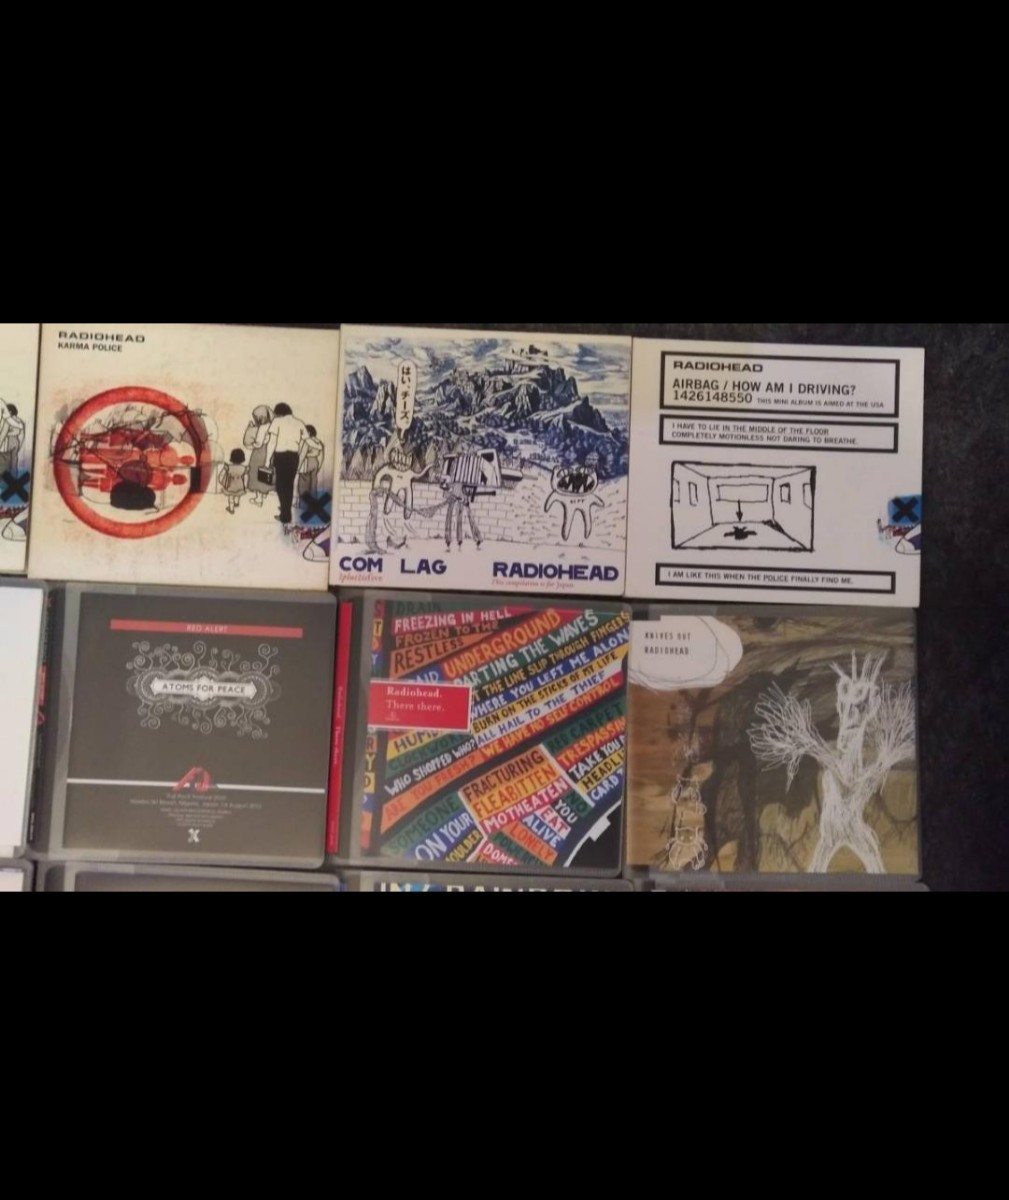 中古CD Radiohead アルバム・シングル・ライブ CD・DVDセット